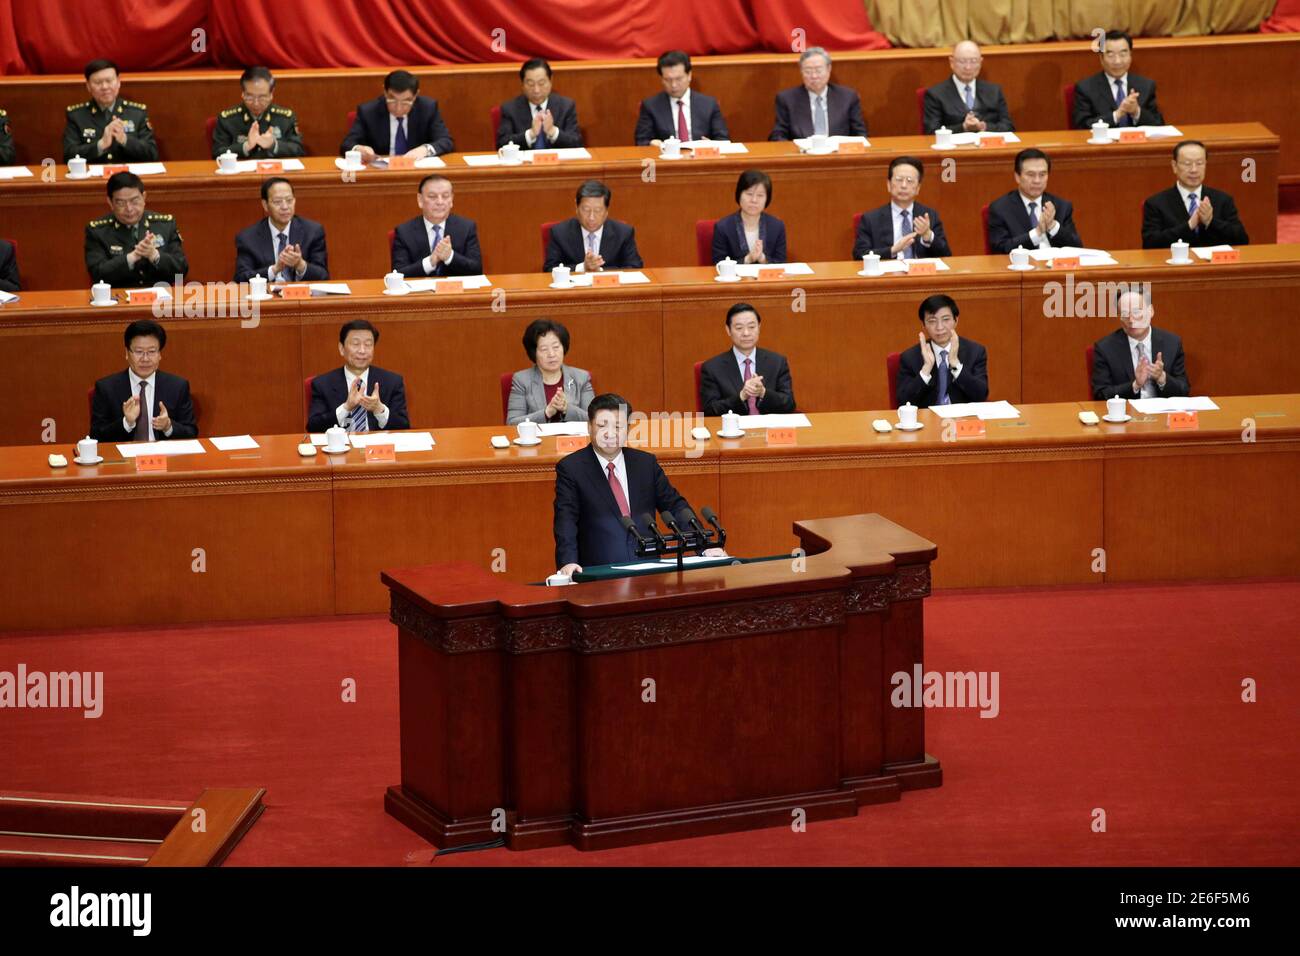 El Presidente de China, Xi Jinping, pronuncia un discurso en una  conferencia conmemorativa del 150° aniversario del nacimiento de Sun  Yat-Sen, ampliamente reconocido como el padre de la China moderna, en el